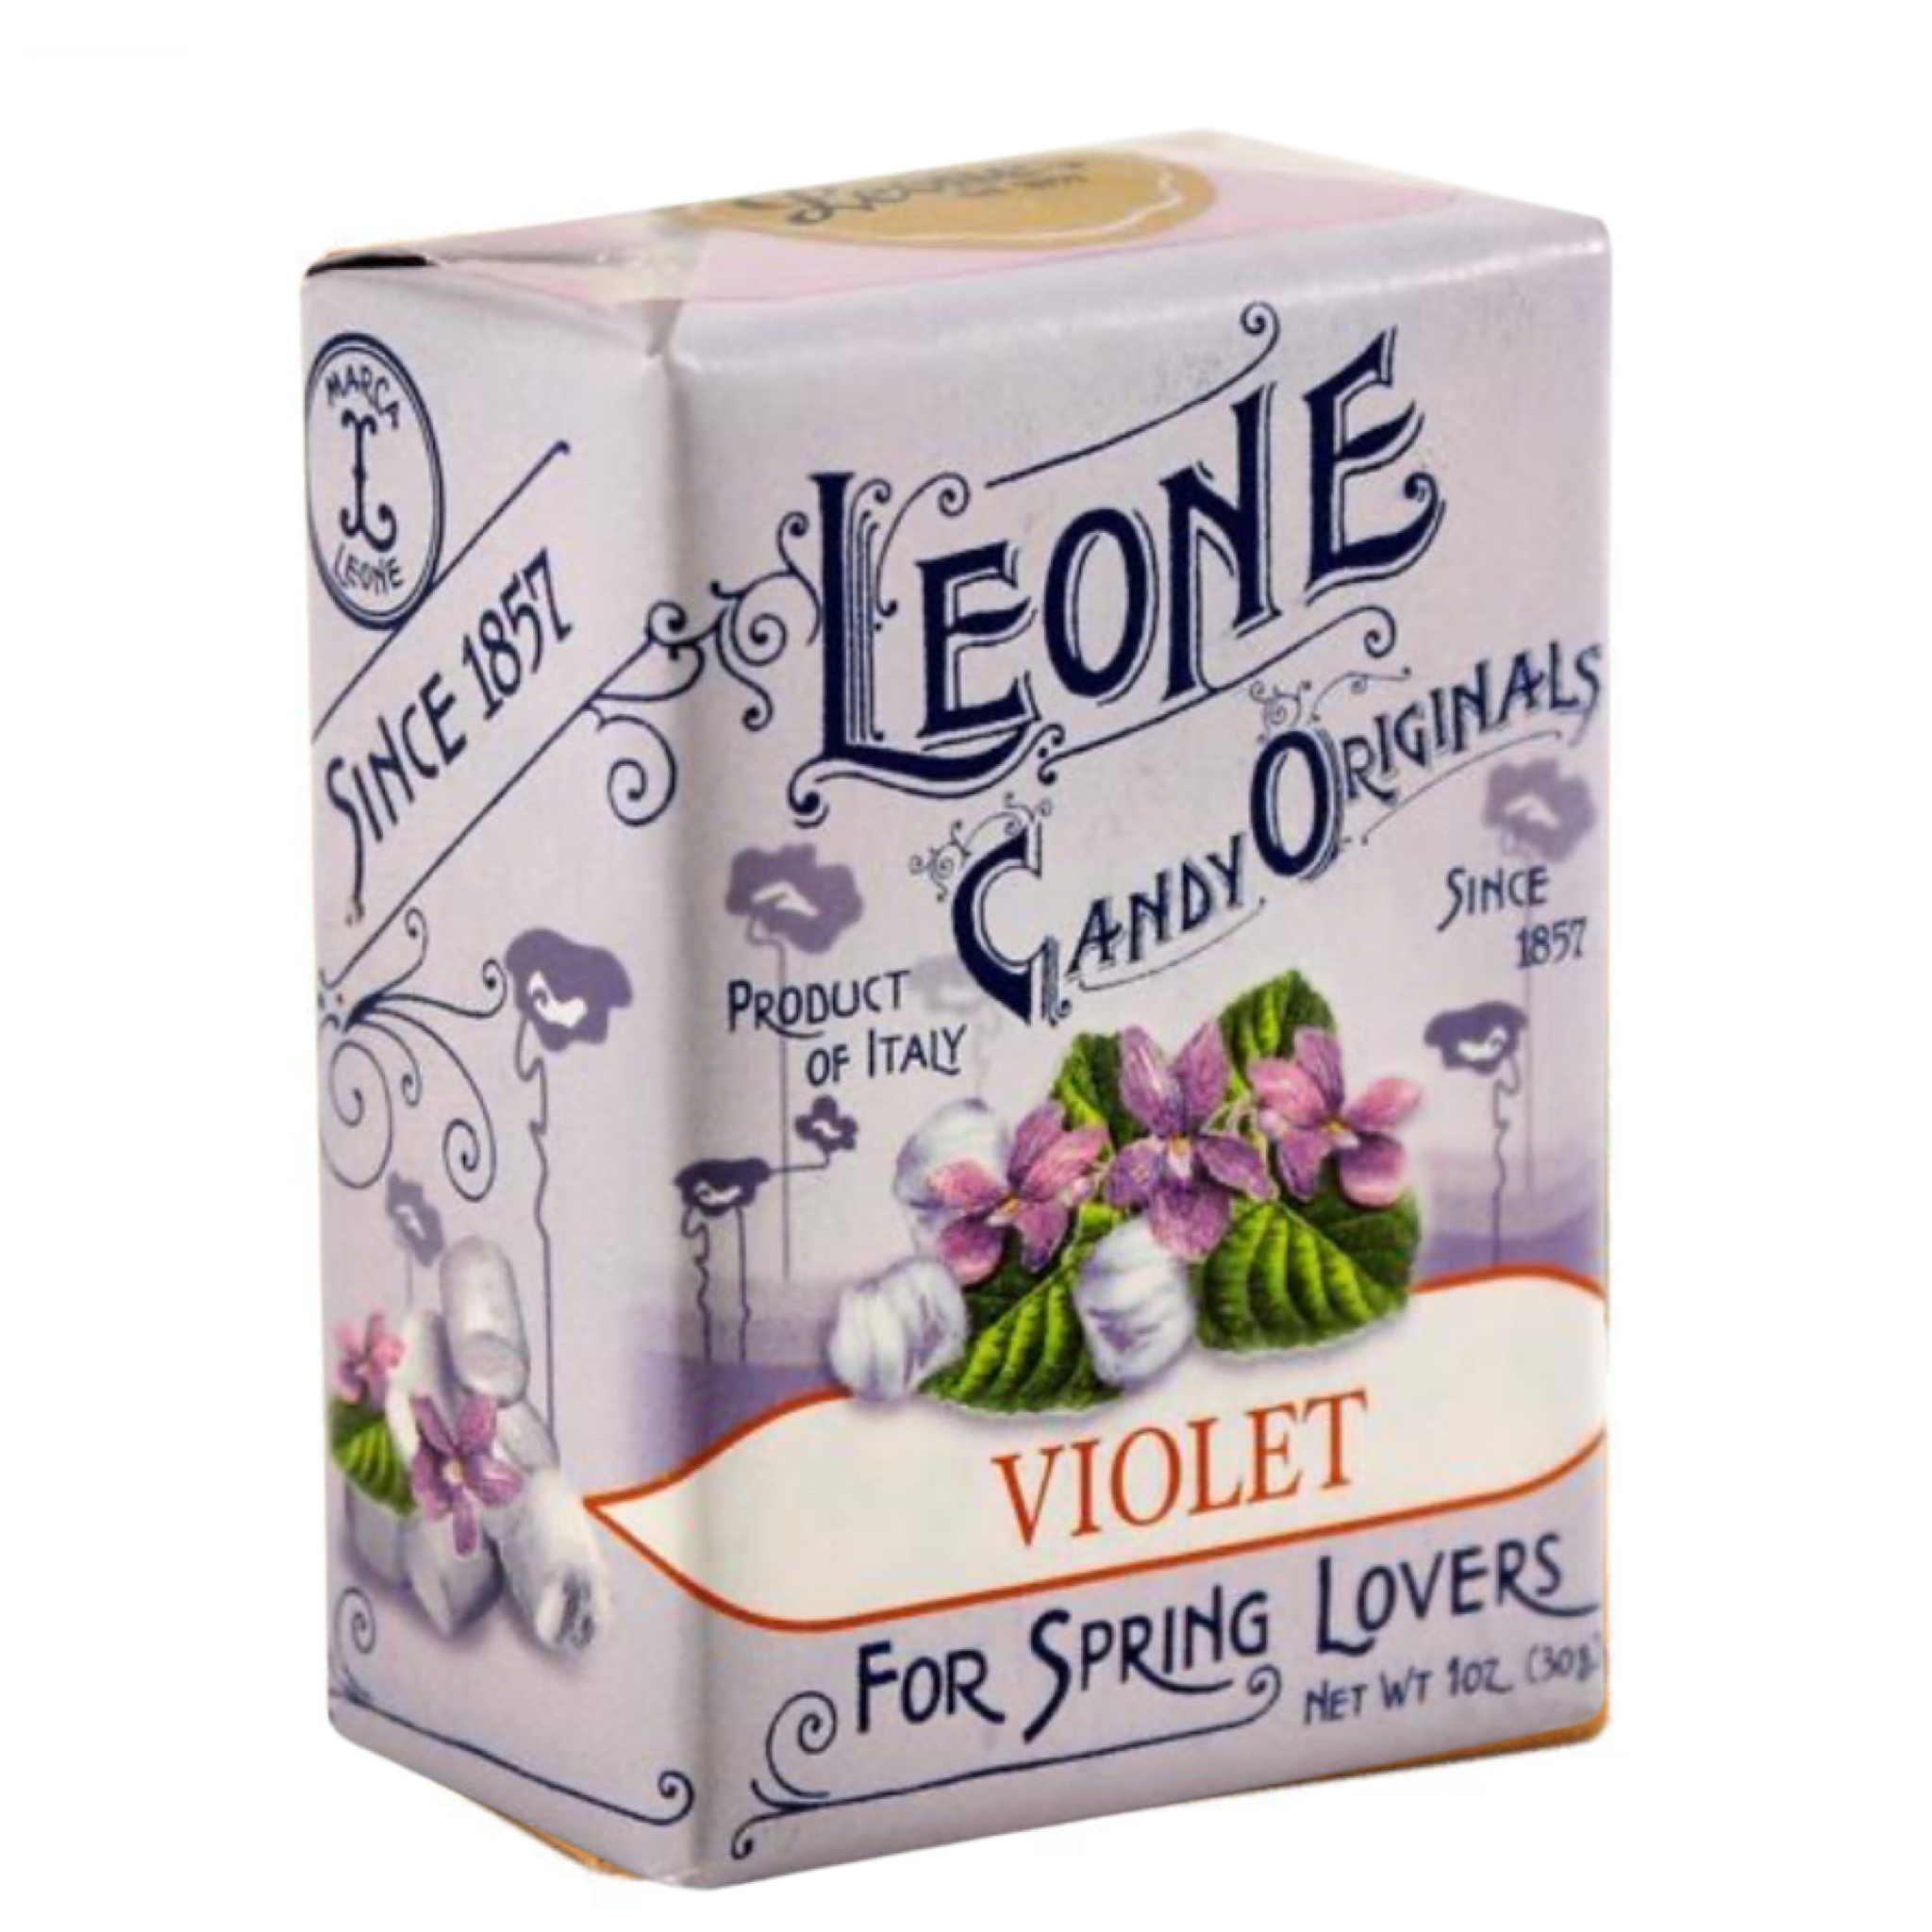 Violet Leone: small box